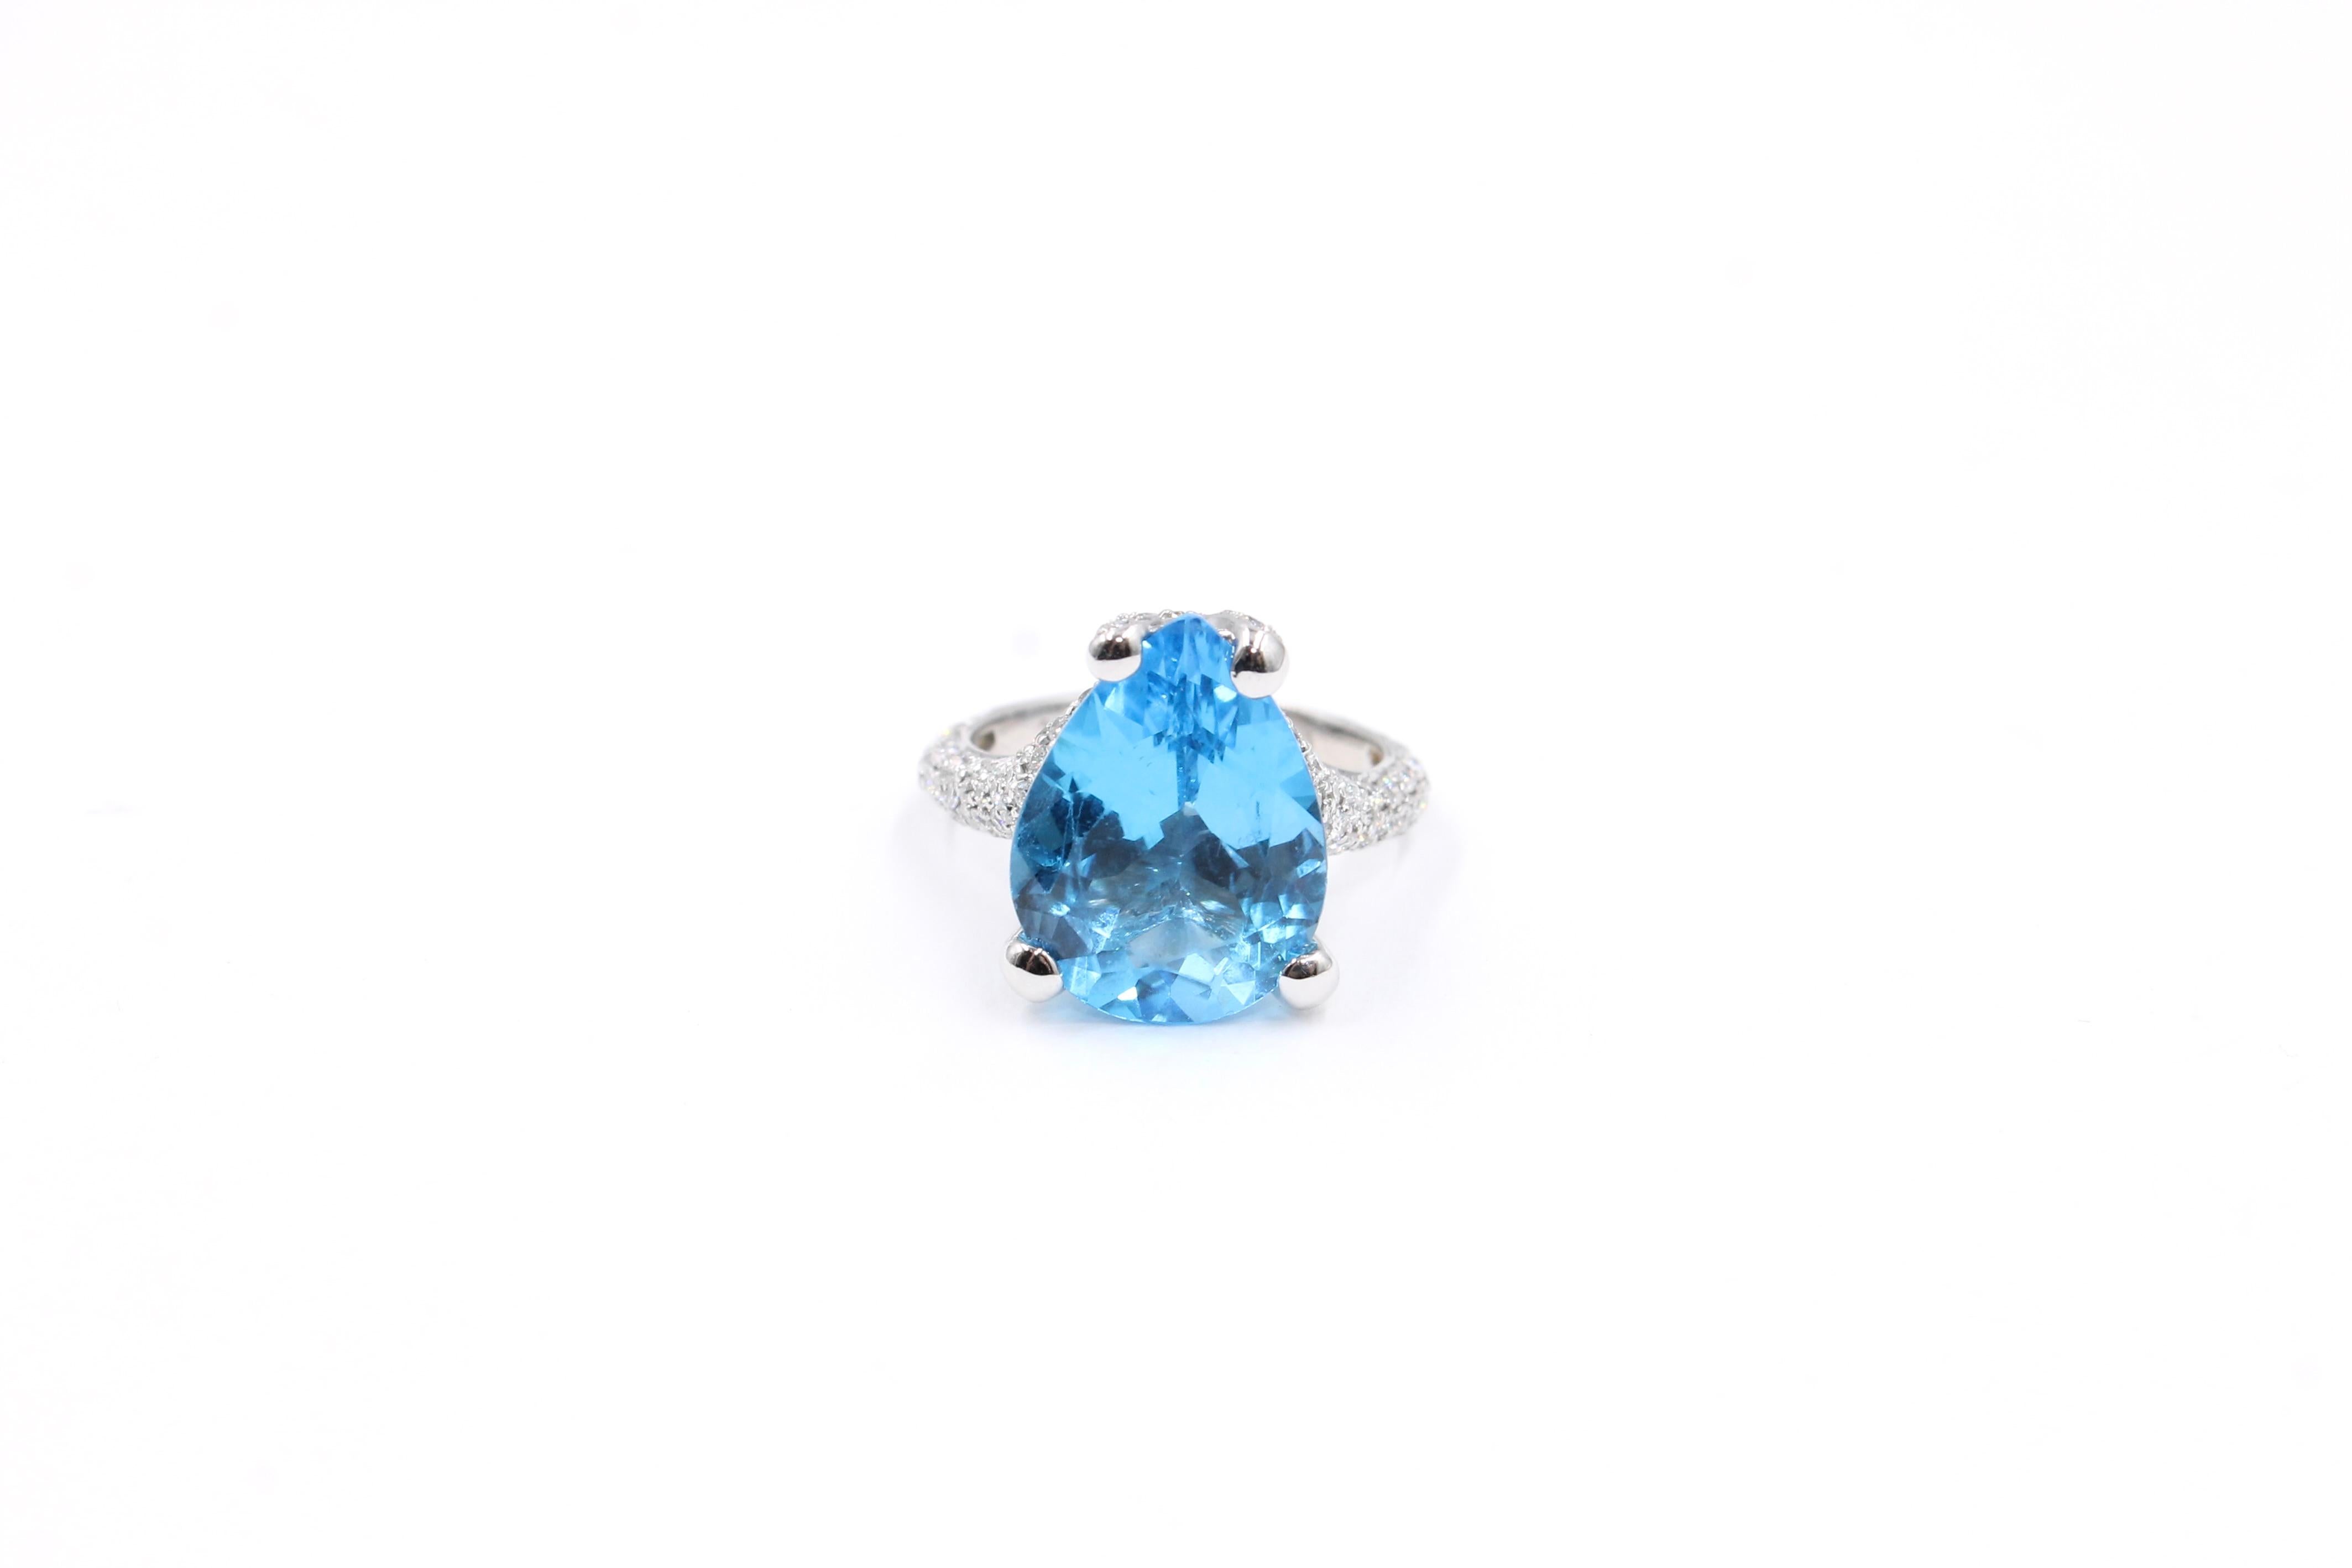 Bague Vintage sertie d'une topaze bleue de forme ovale d'environ 8.00 Carats et d'environ 0.90 Carats de diamants pleine taille (couleur estimée H - pureté Vs). 

Les pierres sont brillantes et vivantes. La topaze a une couleur bleu océan très